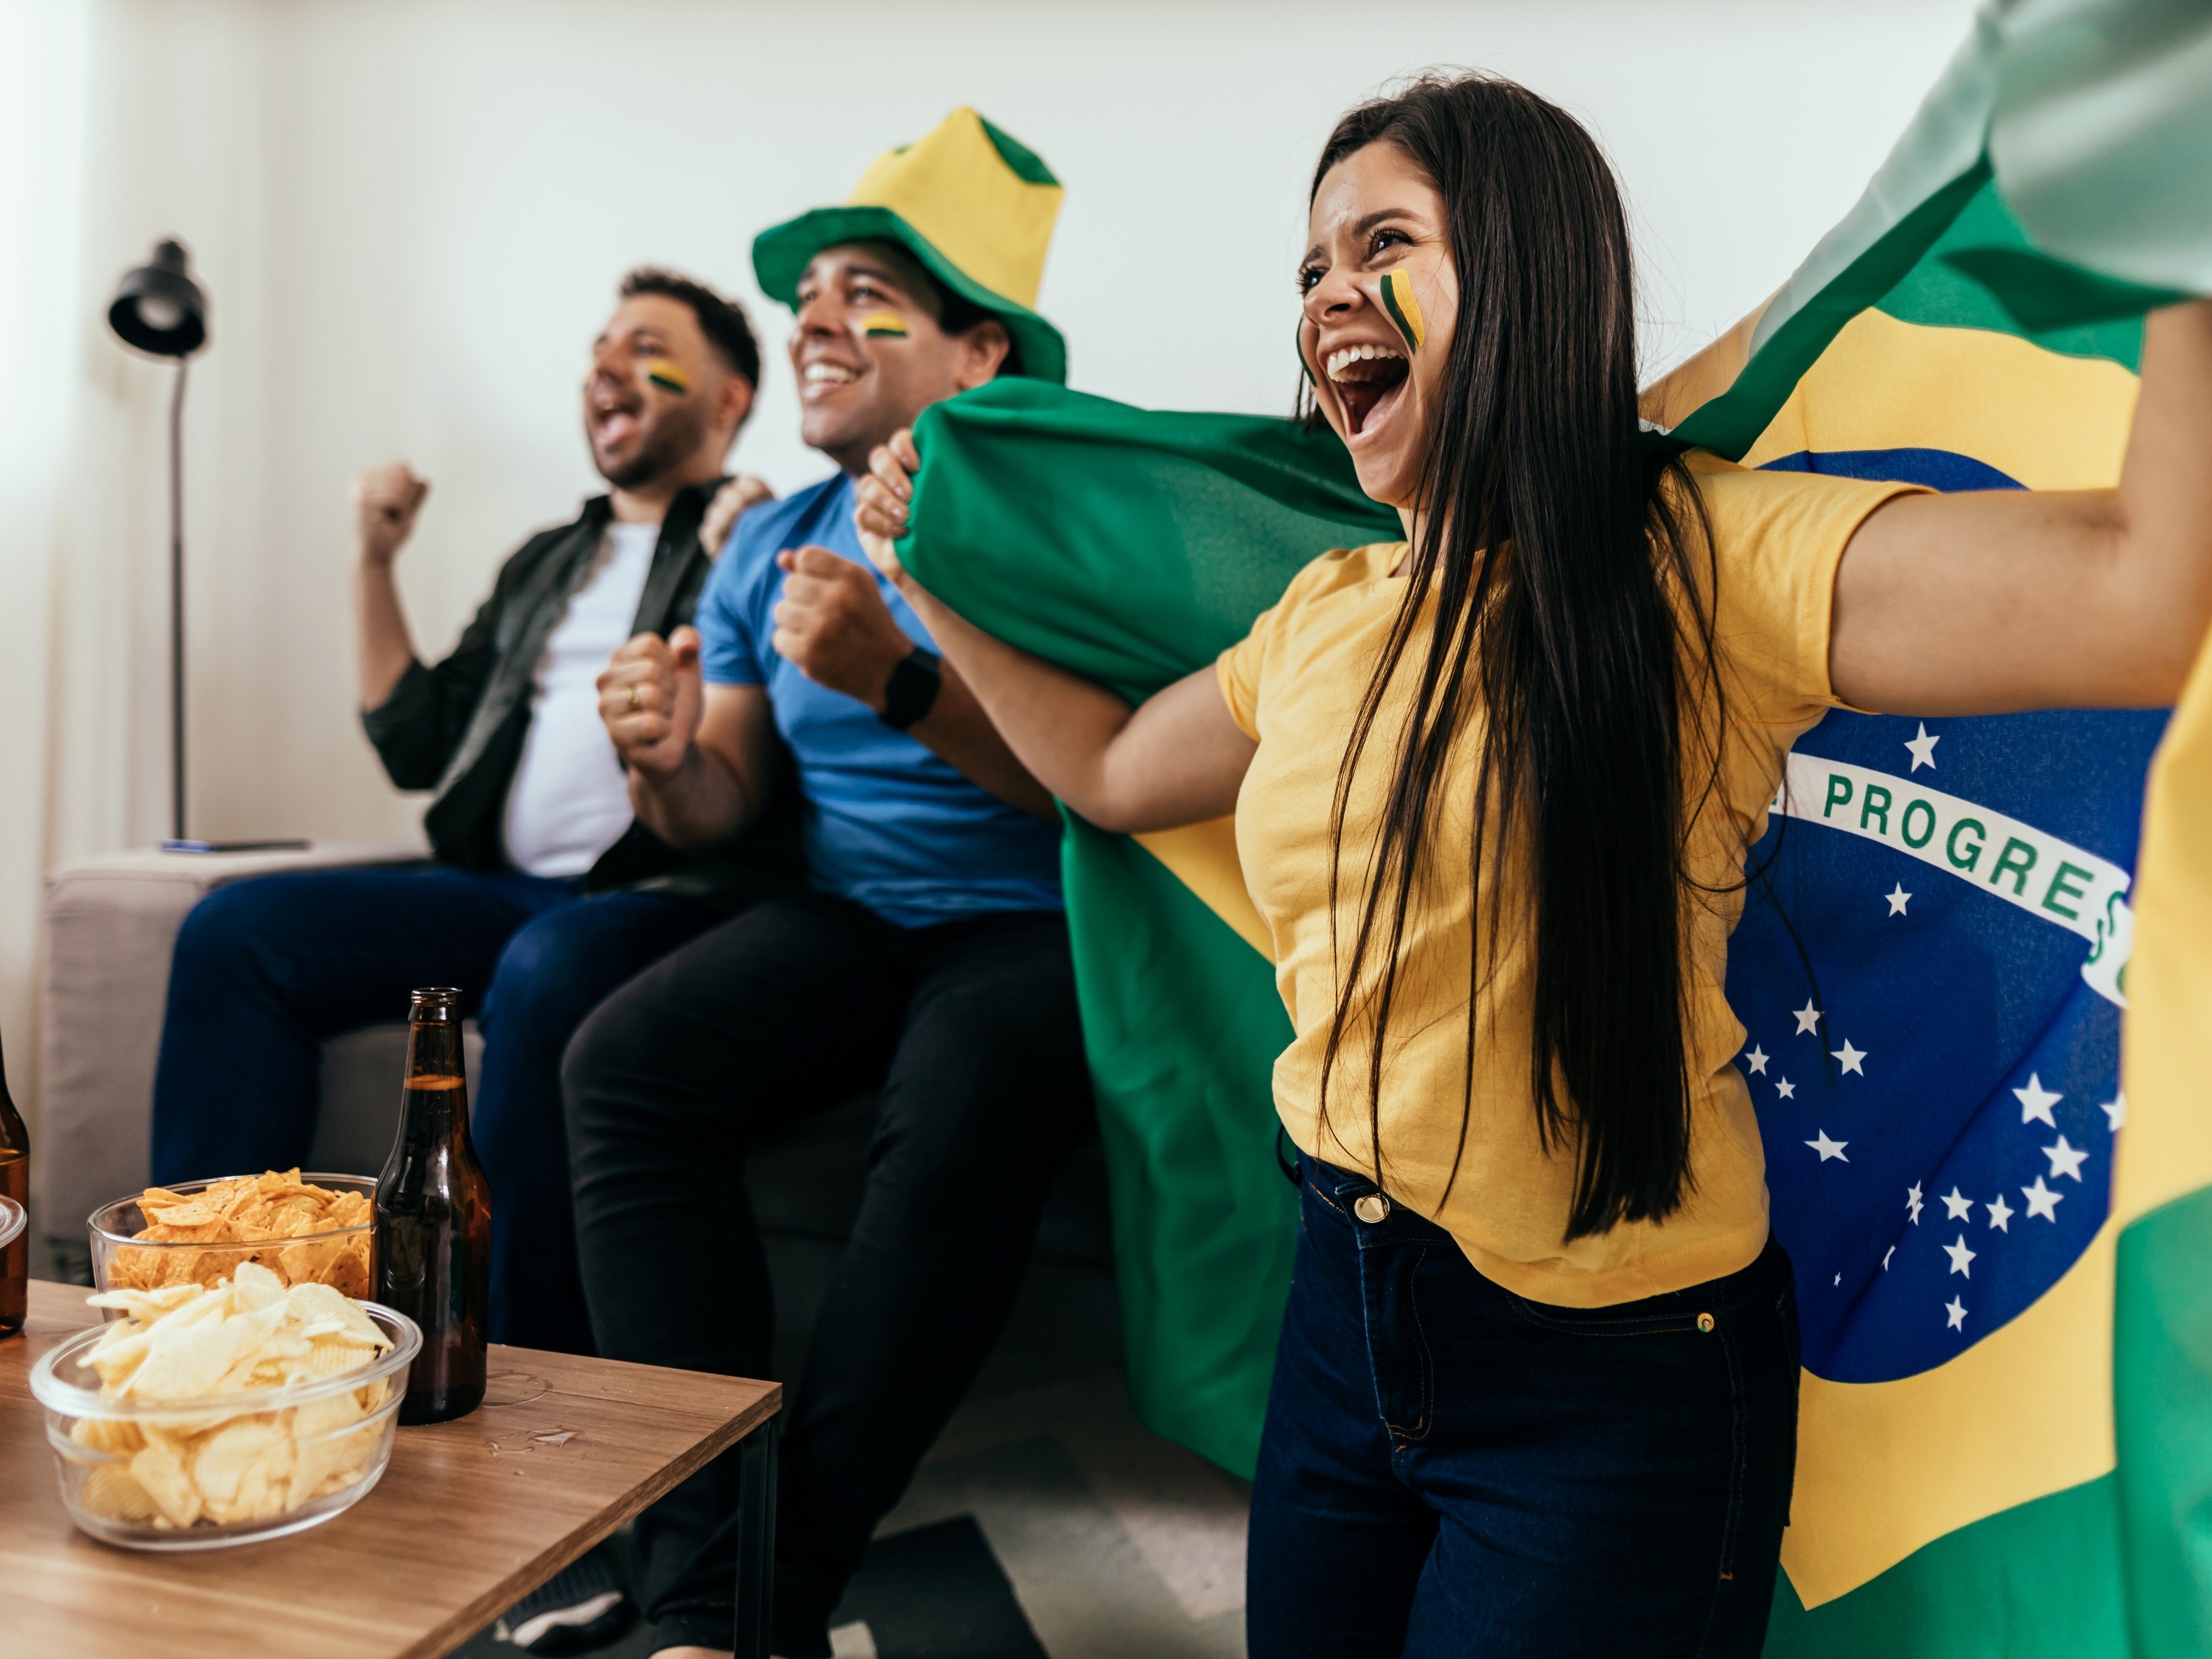 Jogos do Brasil na Copa: shoppings de São Paulo terão horários alterados -  InfoMoney